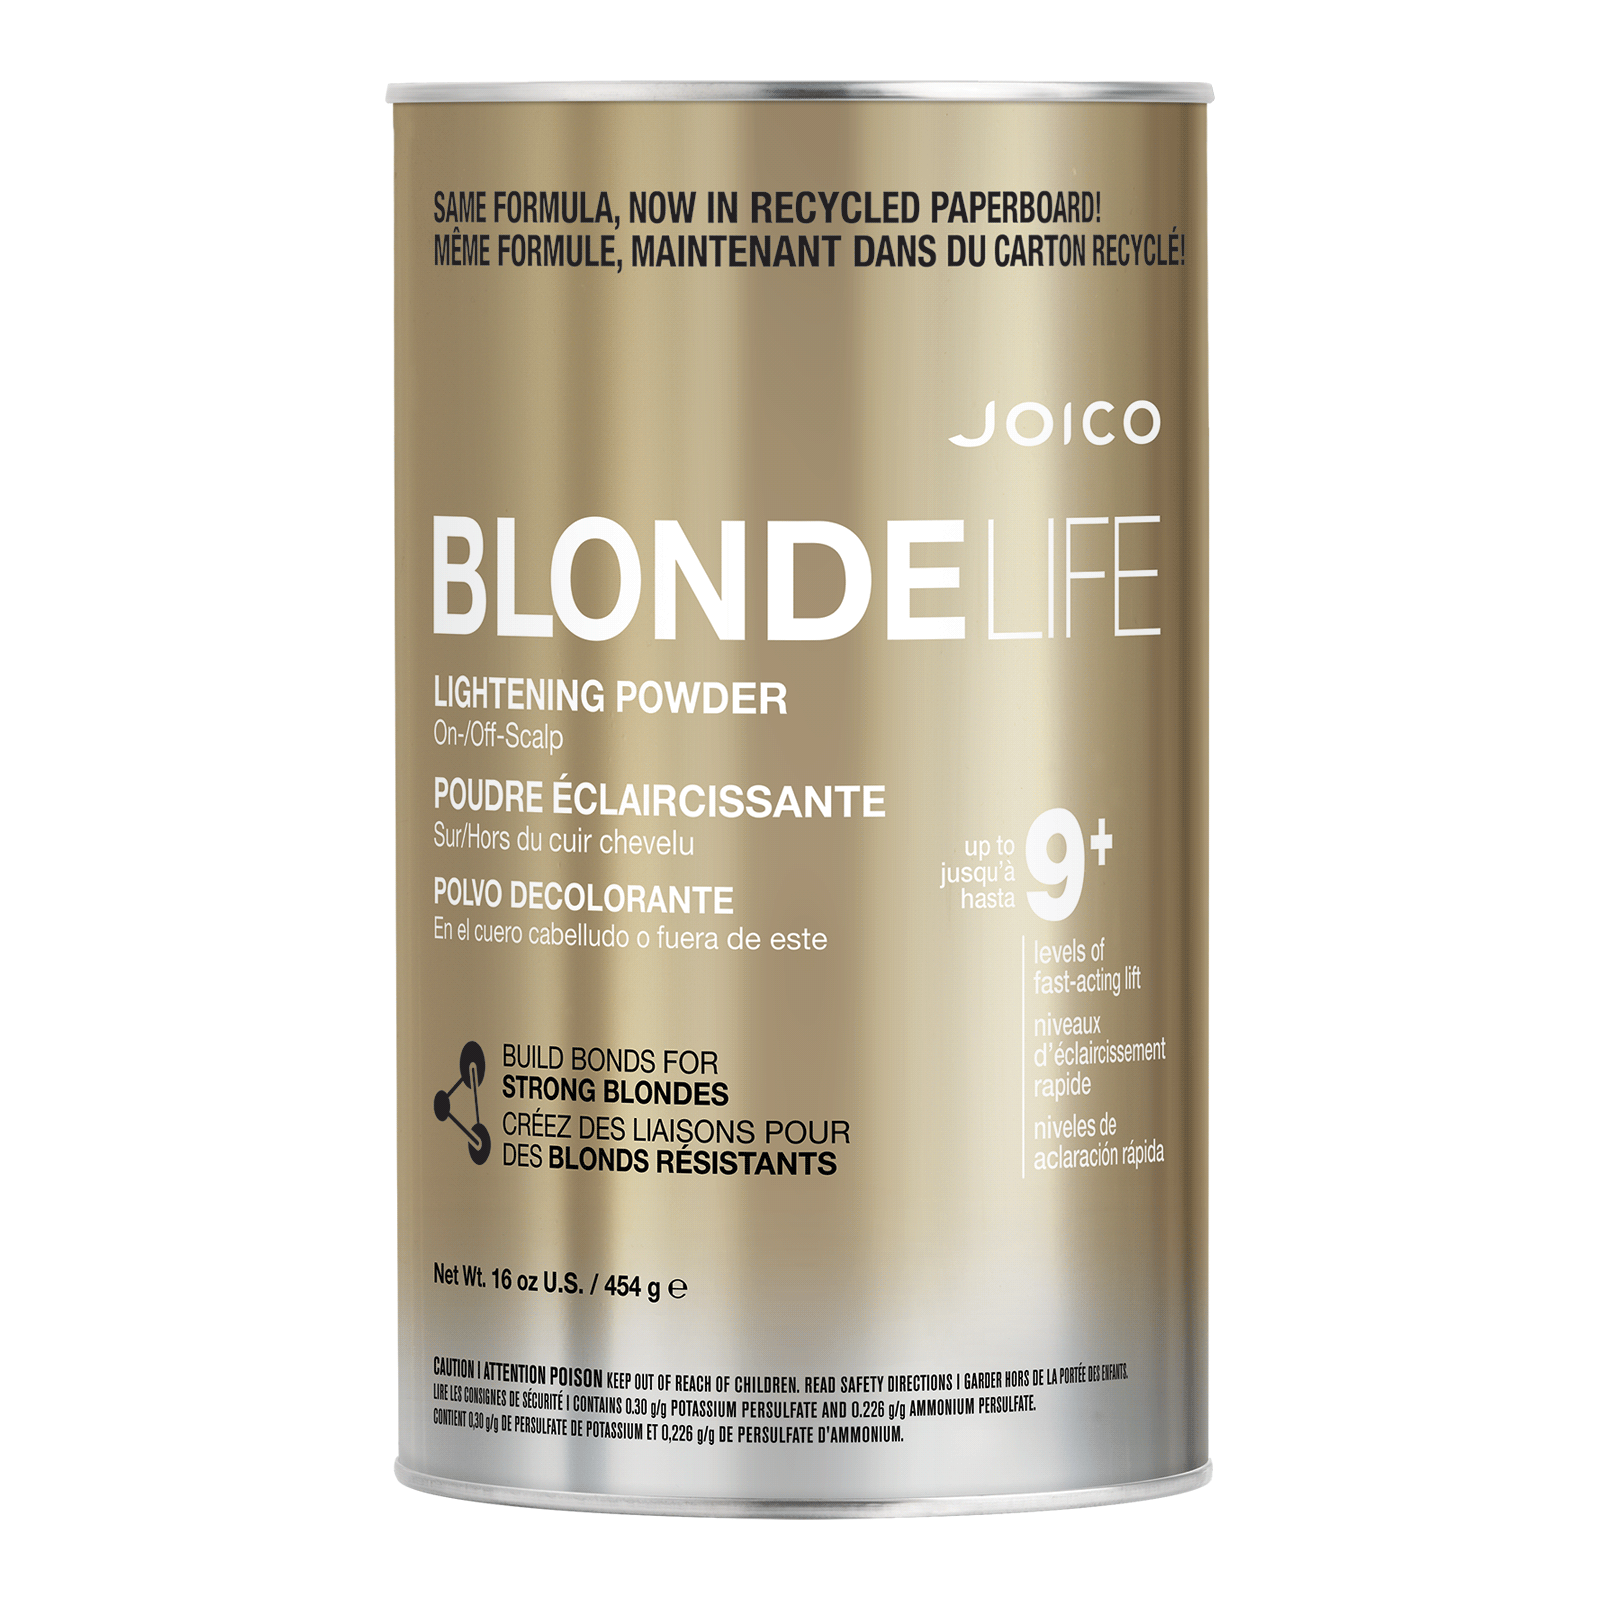 Blonde Life Lightening Powder Joico Cosmoprof